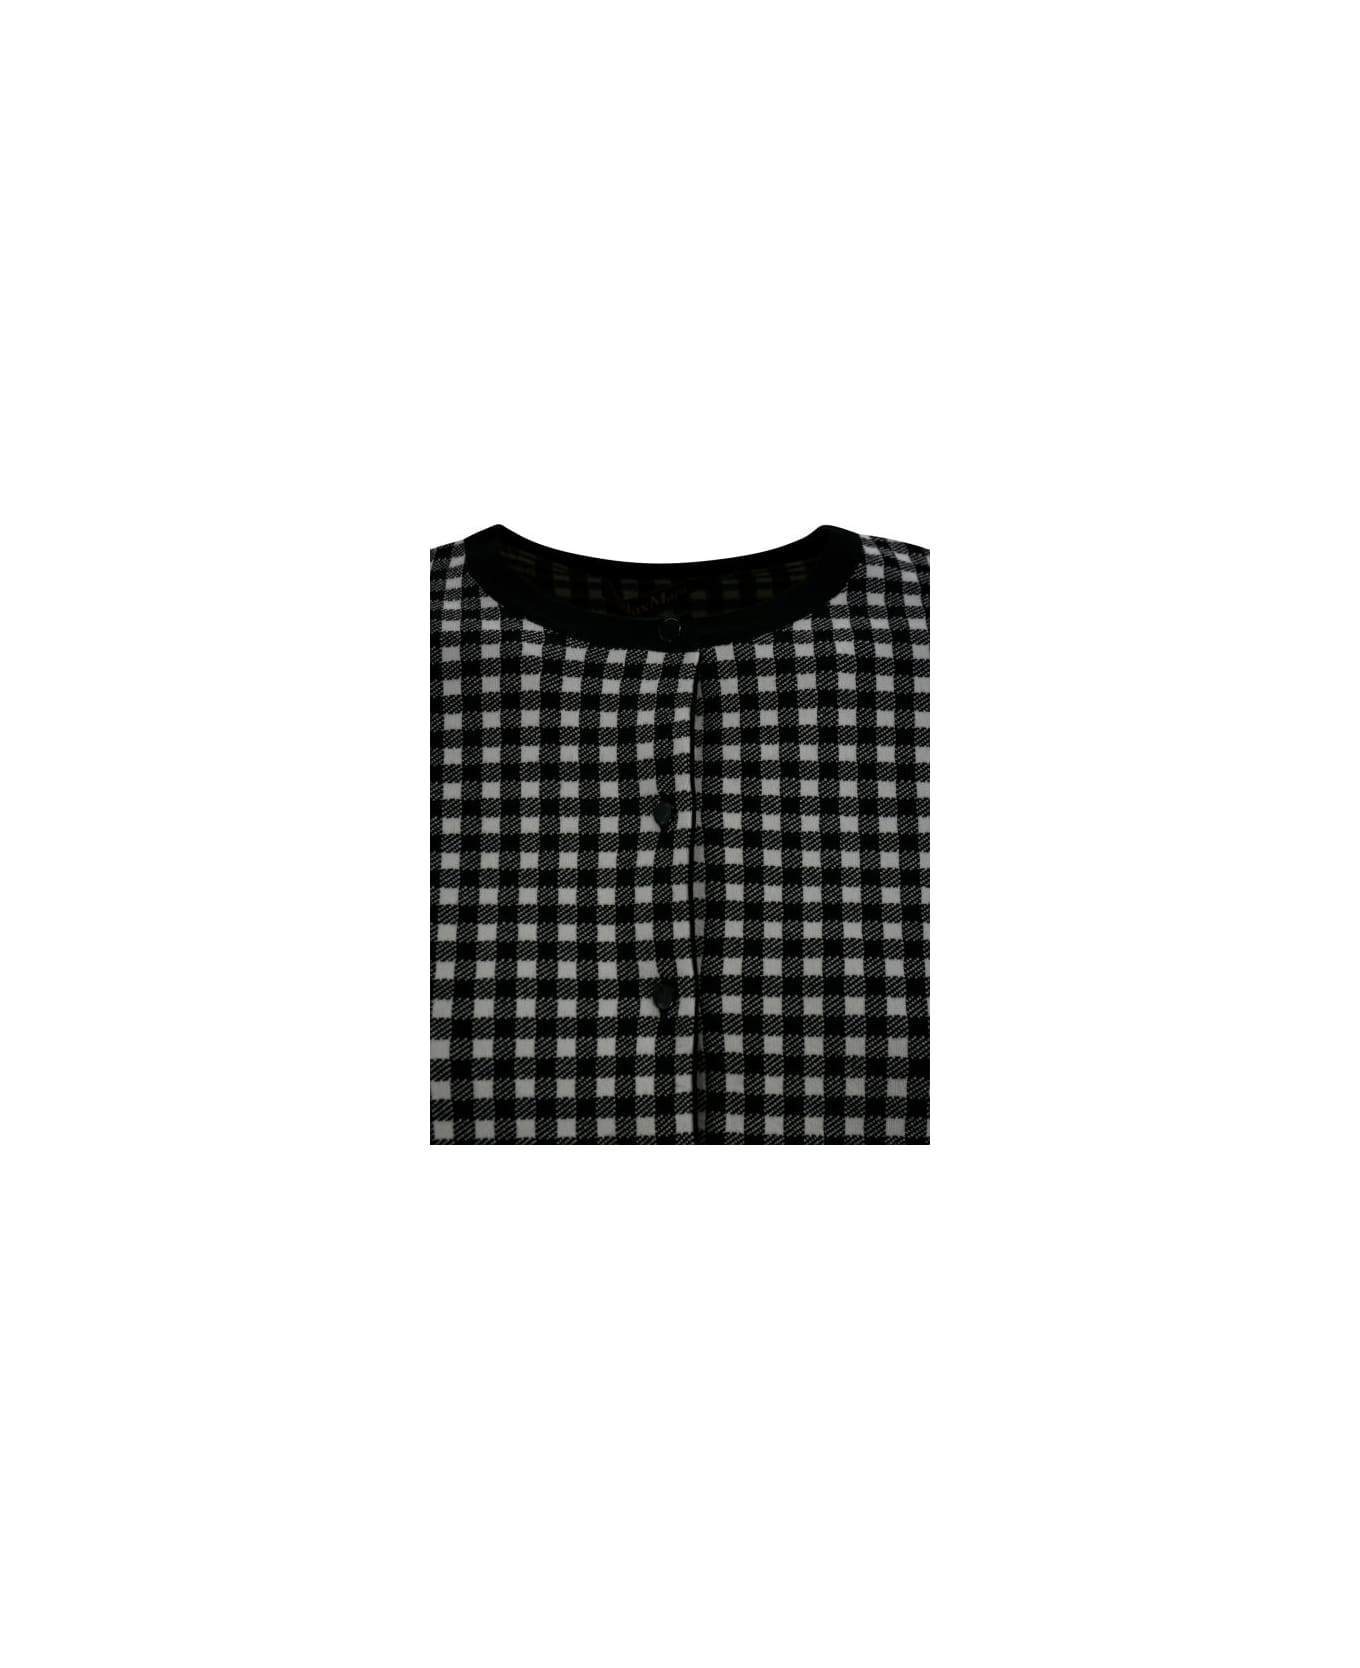 Max Mara Studio Vintage Long-sleeved T-shirt - Vichy bianco e nero